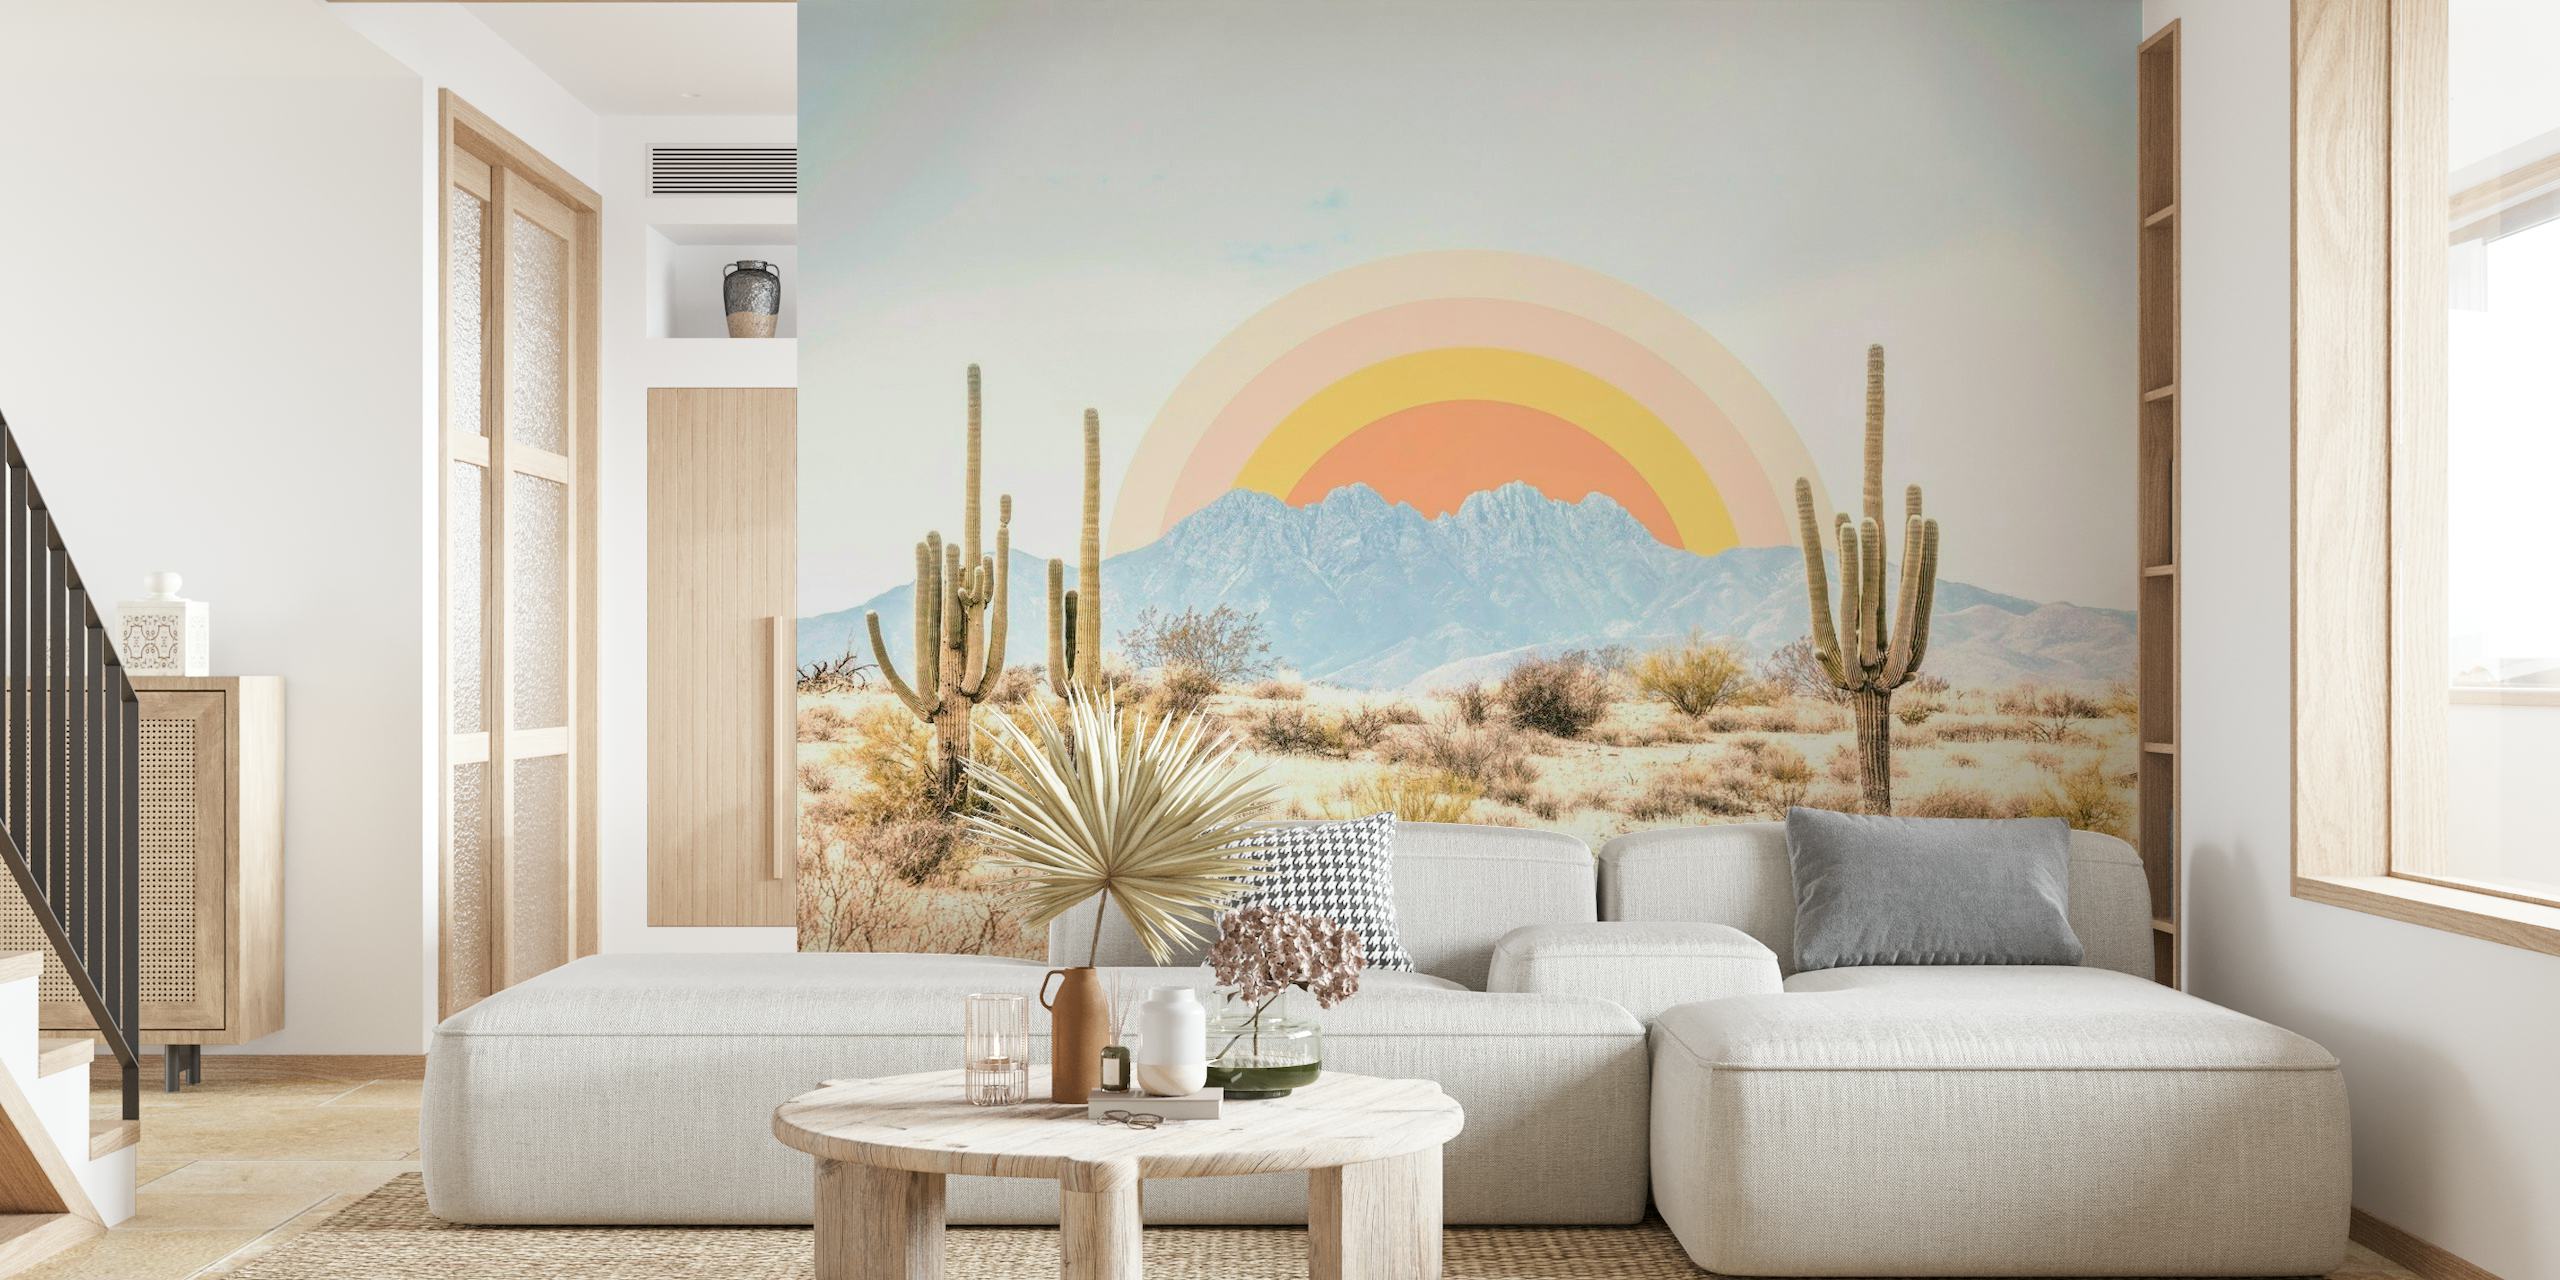 Arizona Sunrise papel pintado